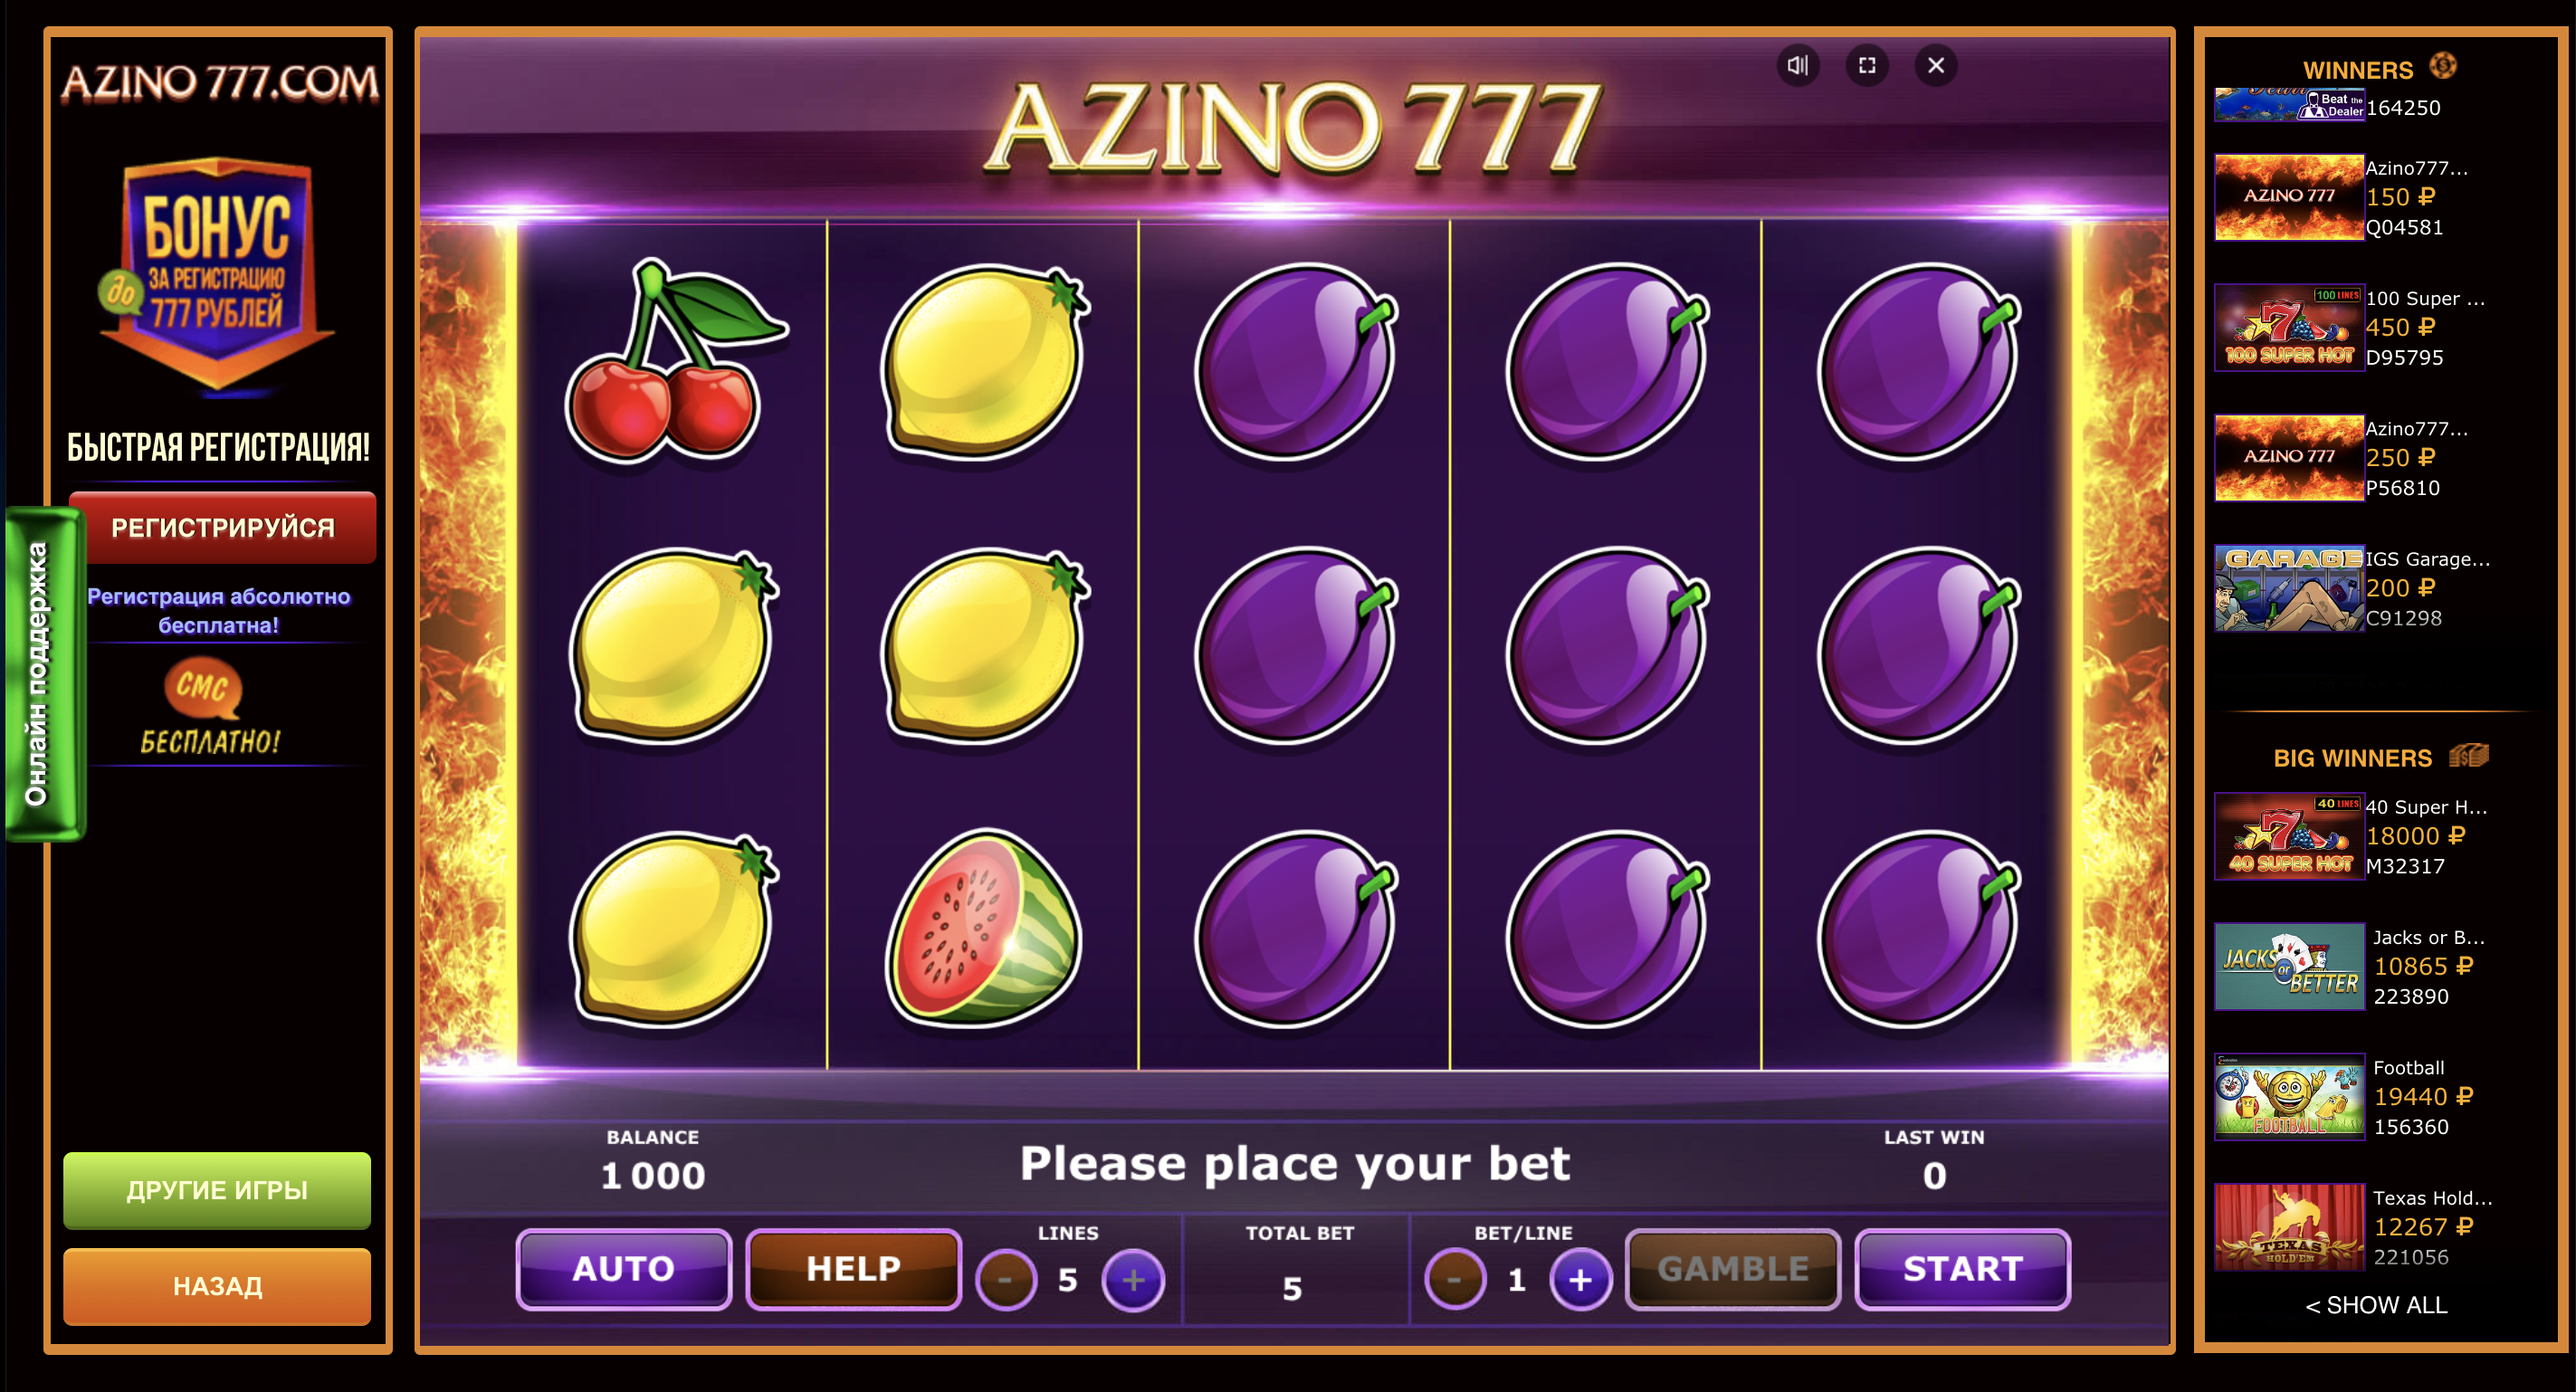 Онлайн azino777 1 x slots casino отзывы игроков